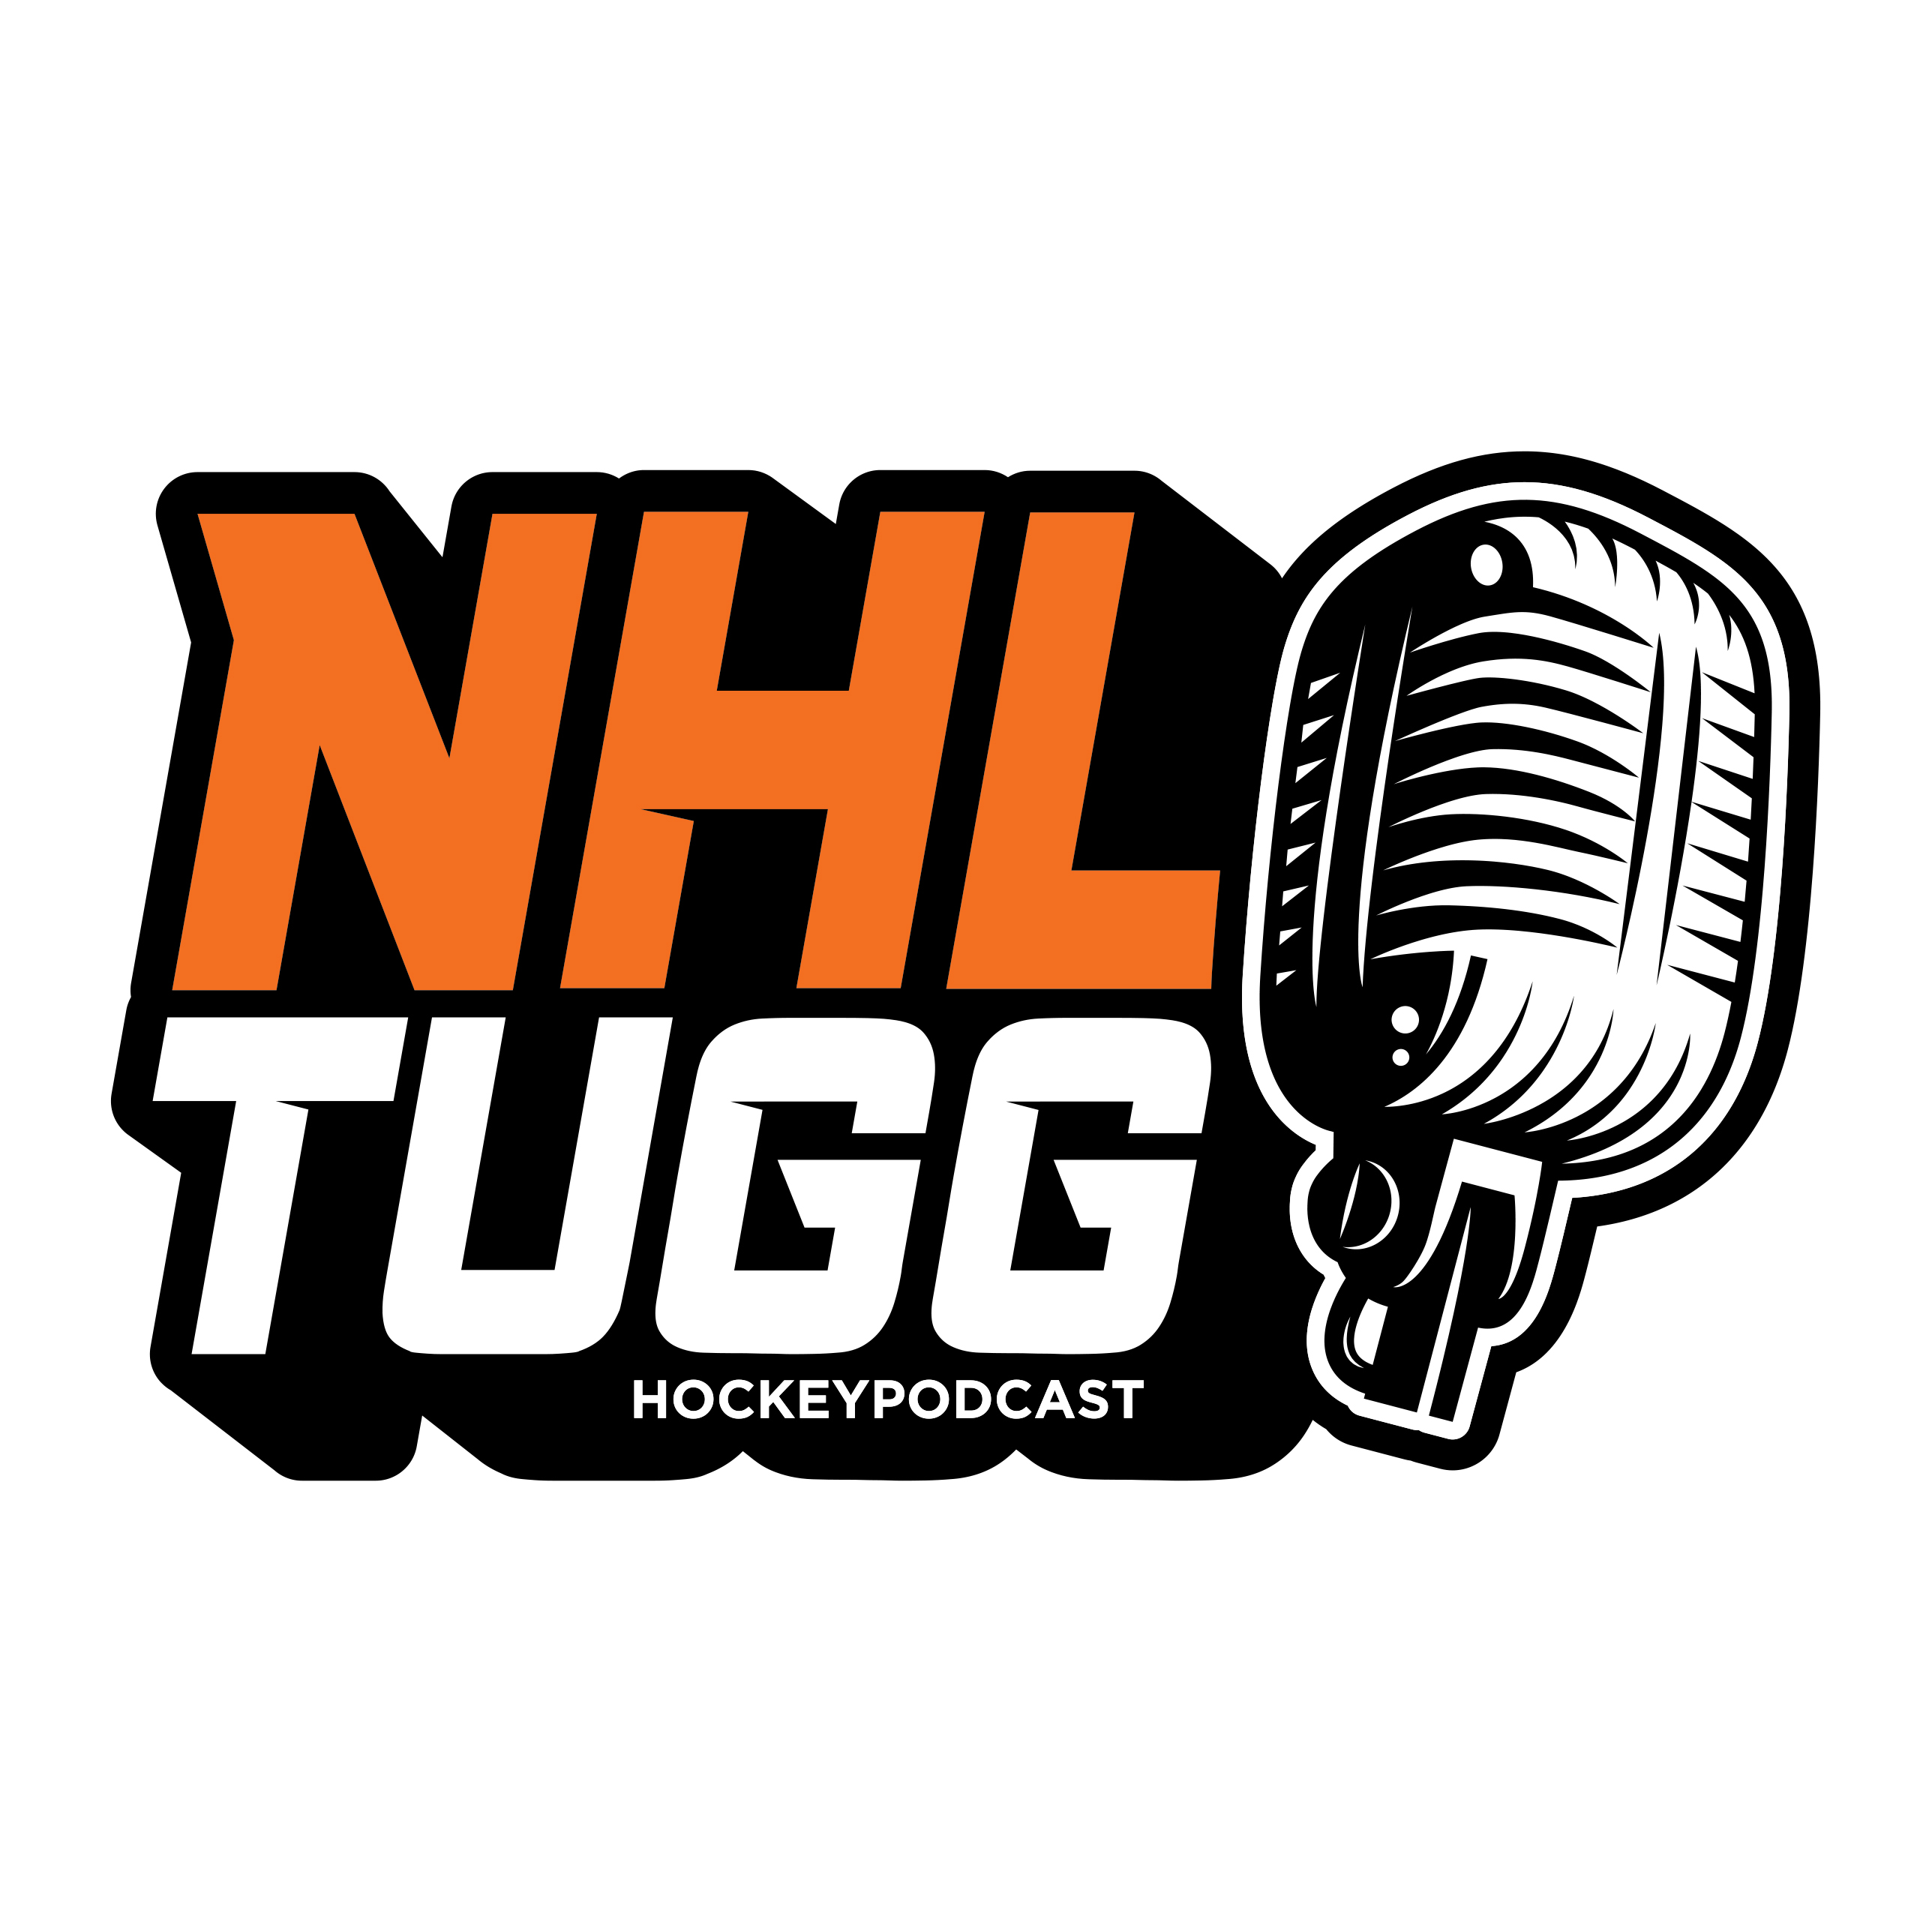 NHL-Tugg avsnitt 94 ”Mardrömsscenario om Penguins får förstavalet”